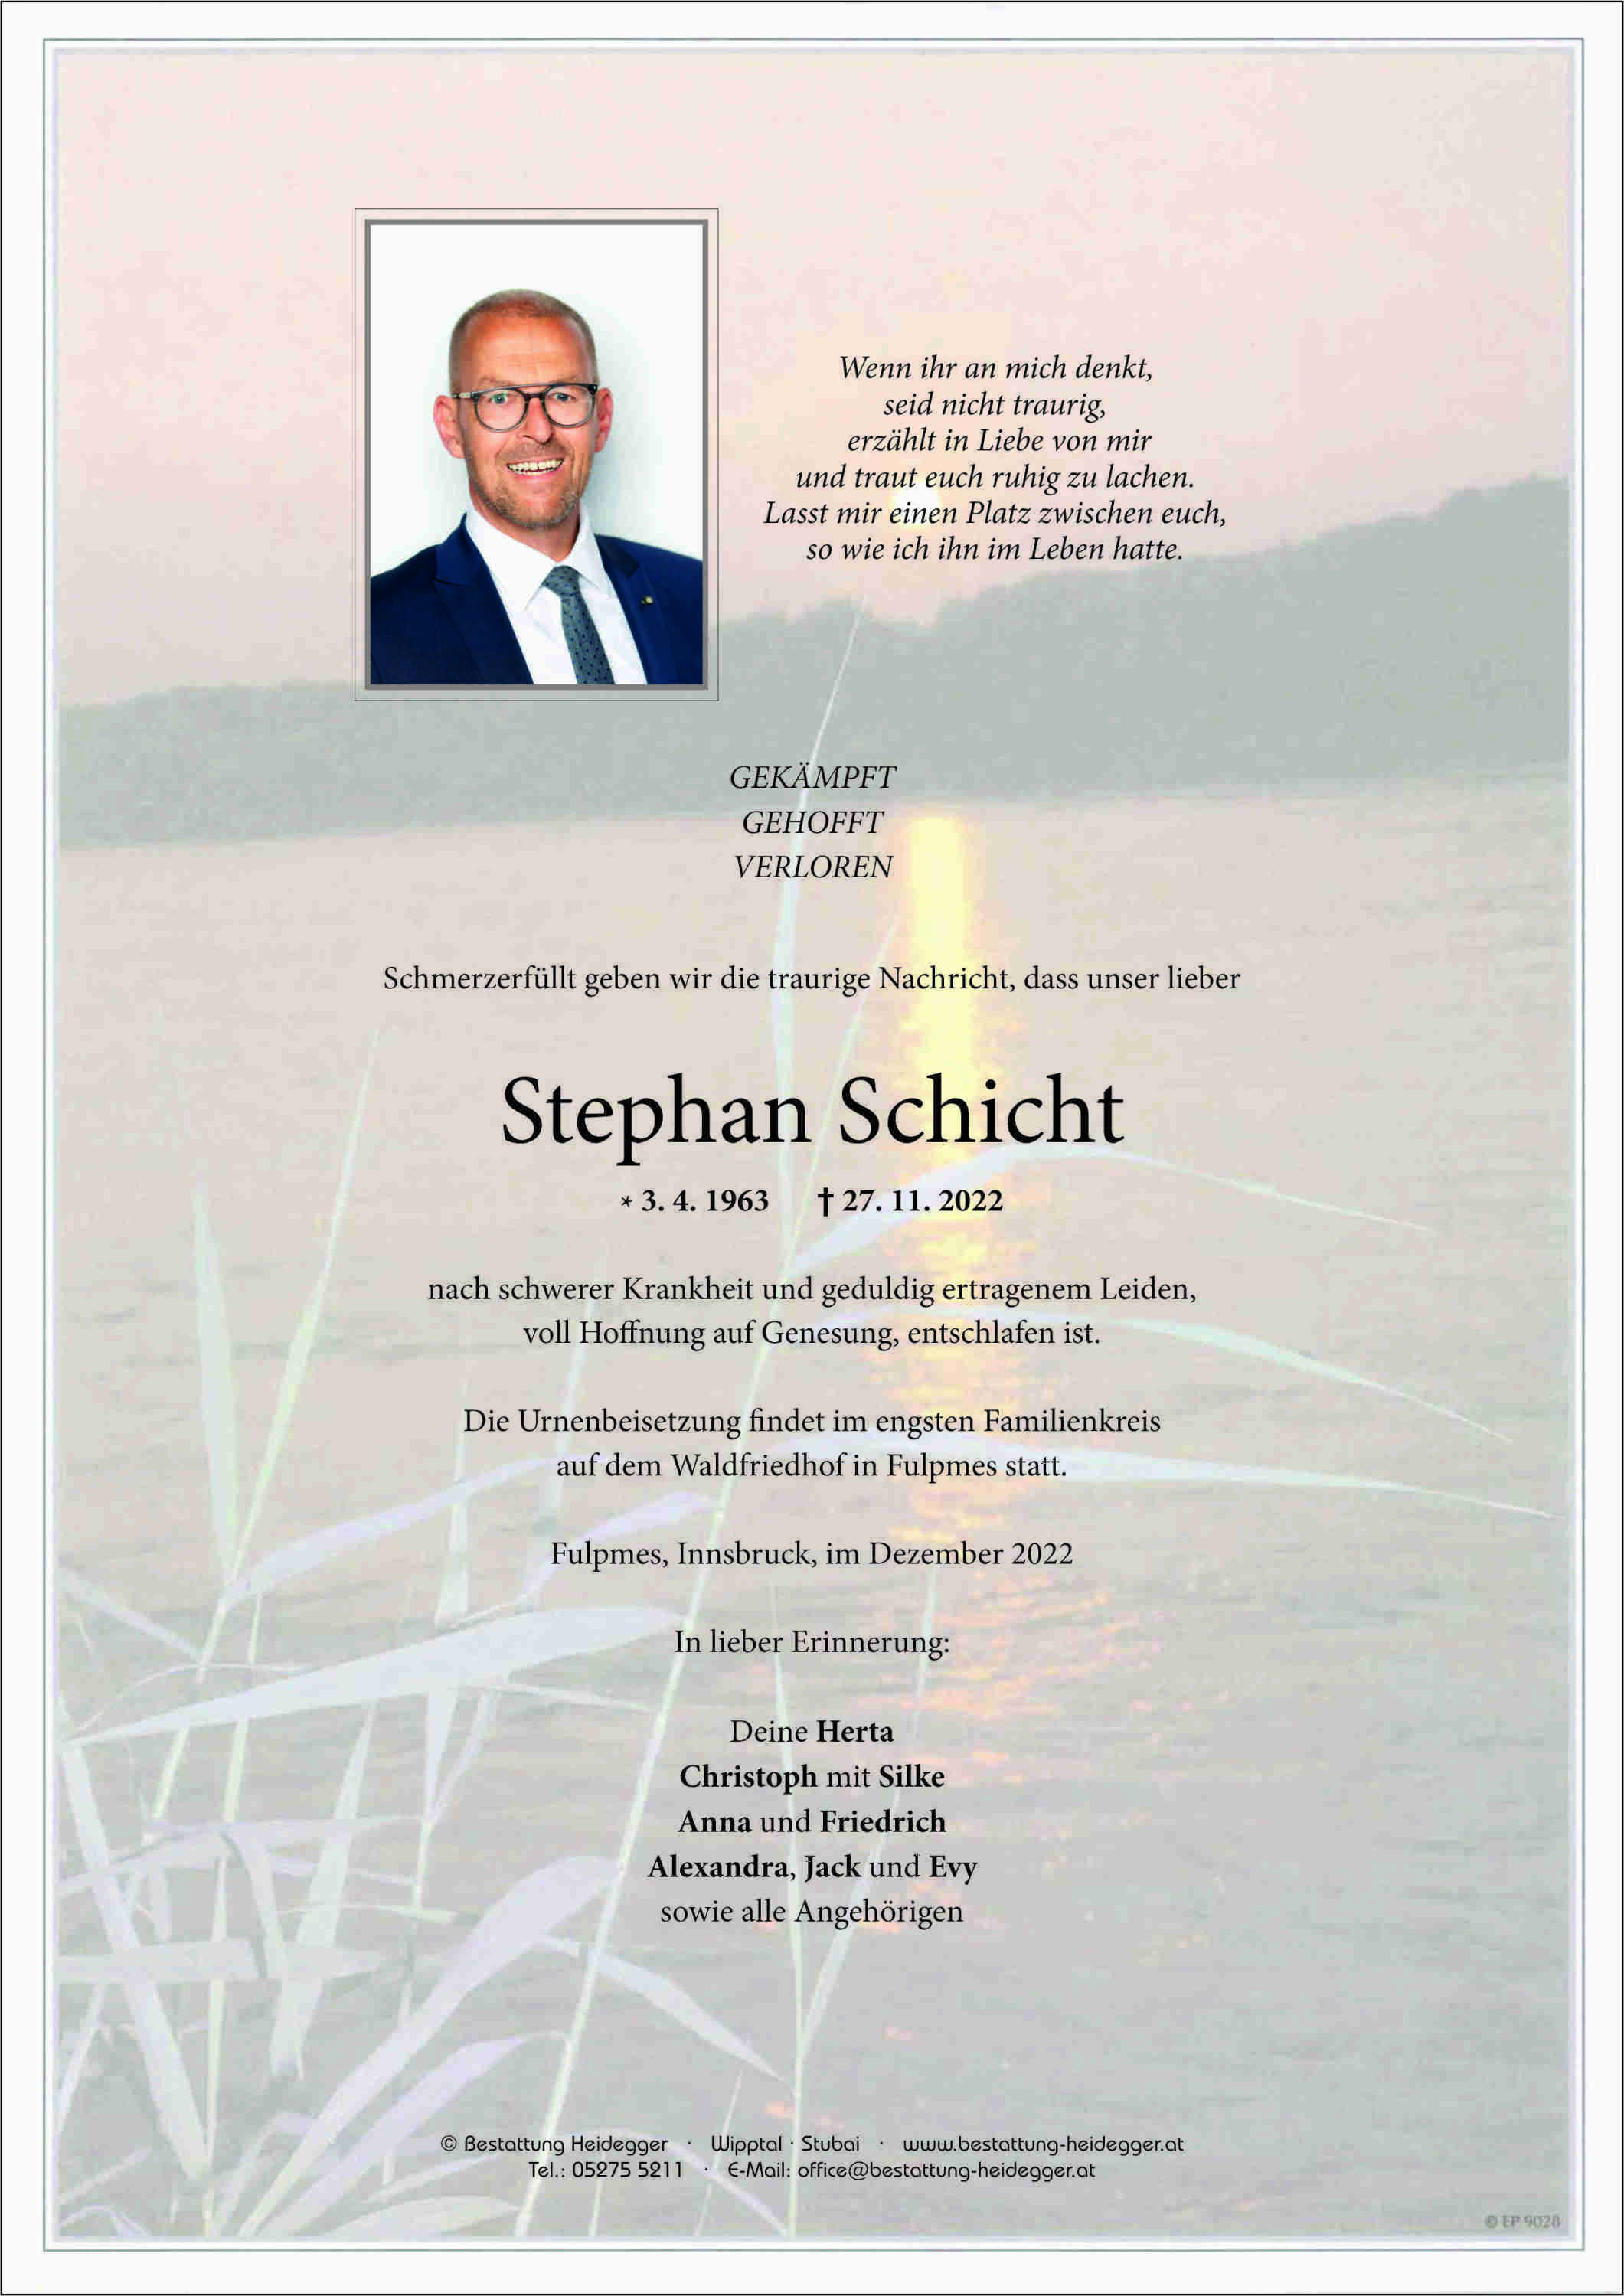 Stephan Schicht